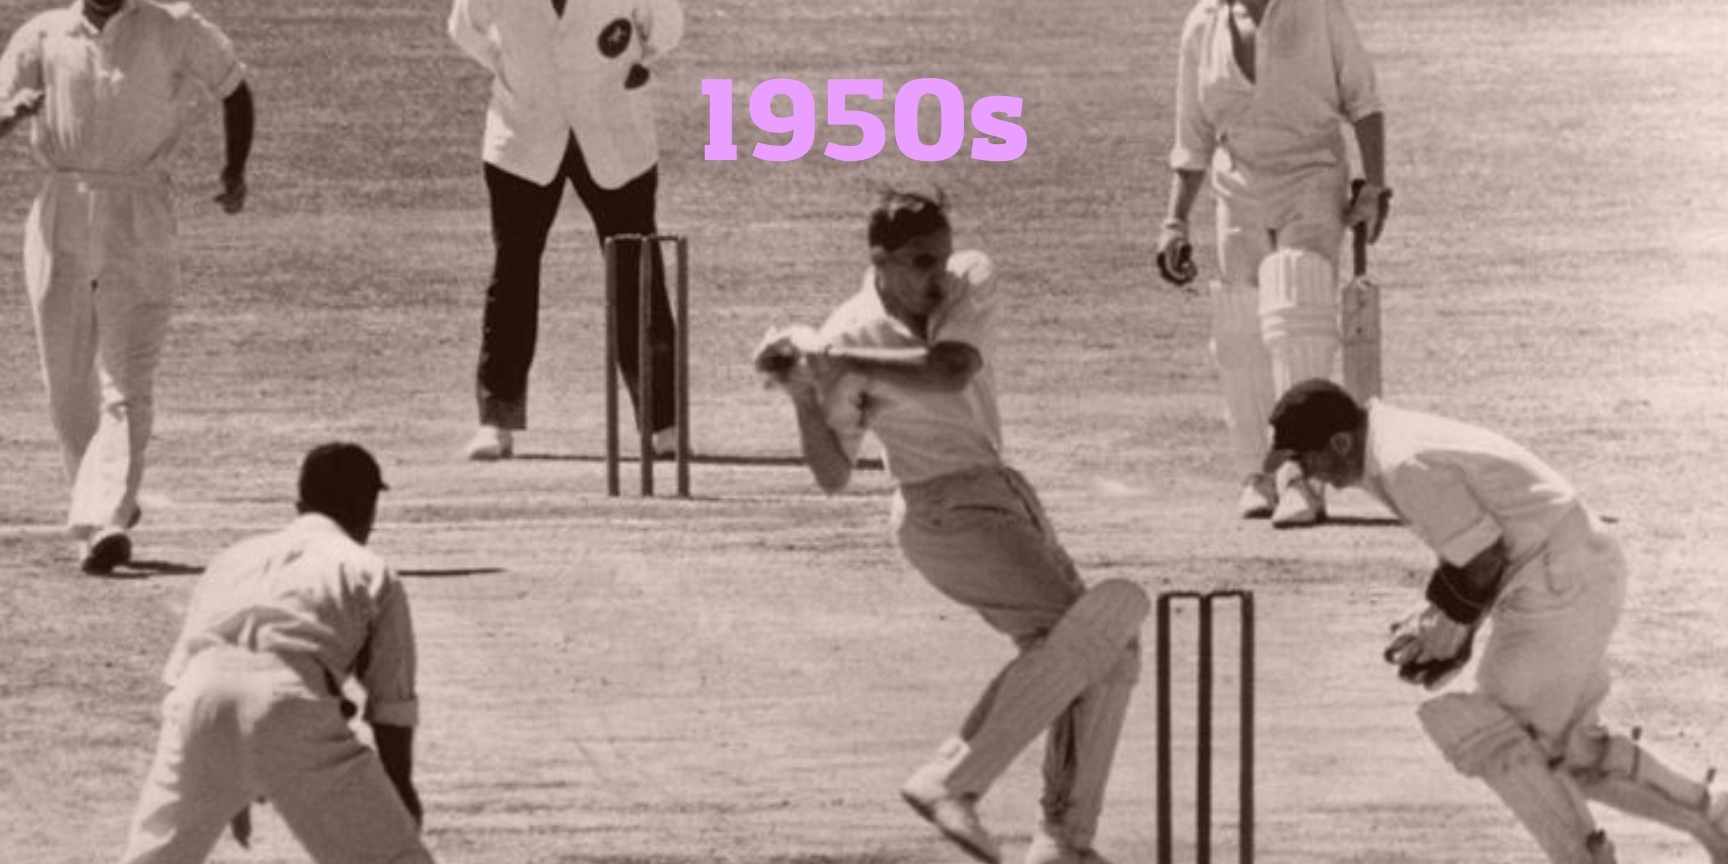 1950s main cricket dates